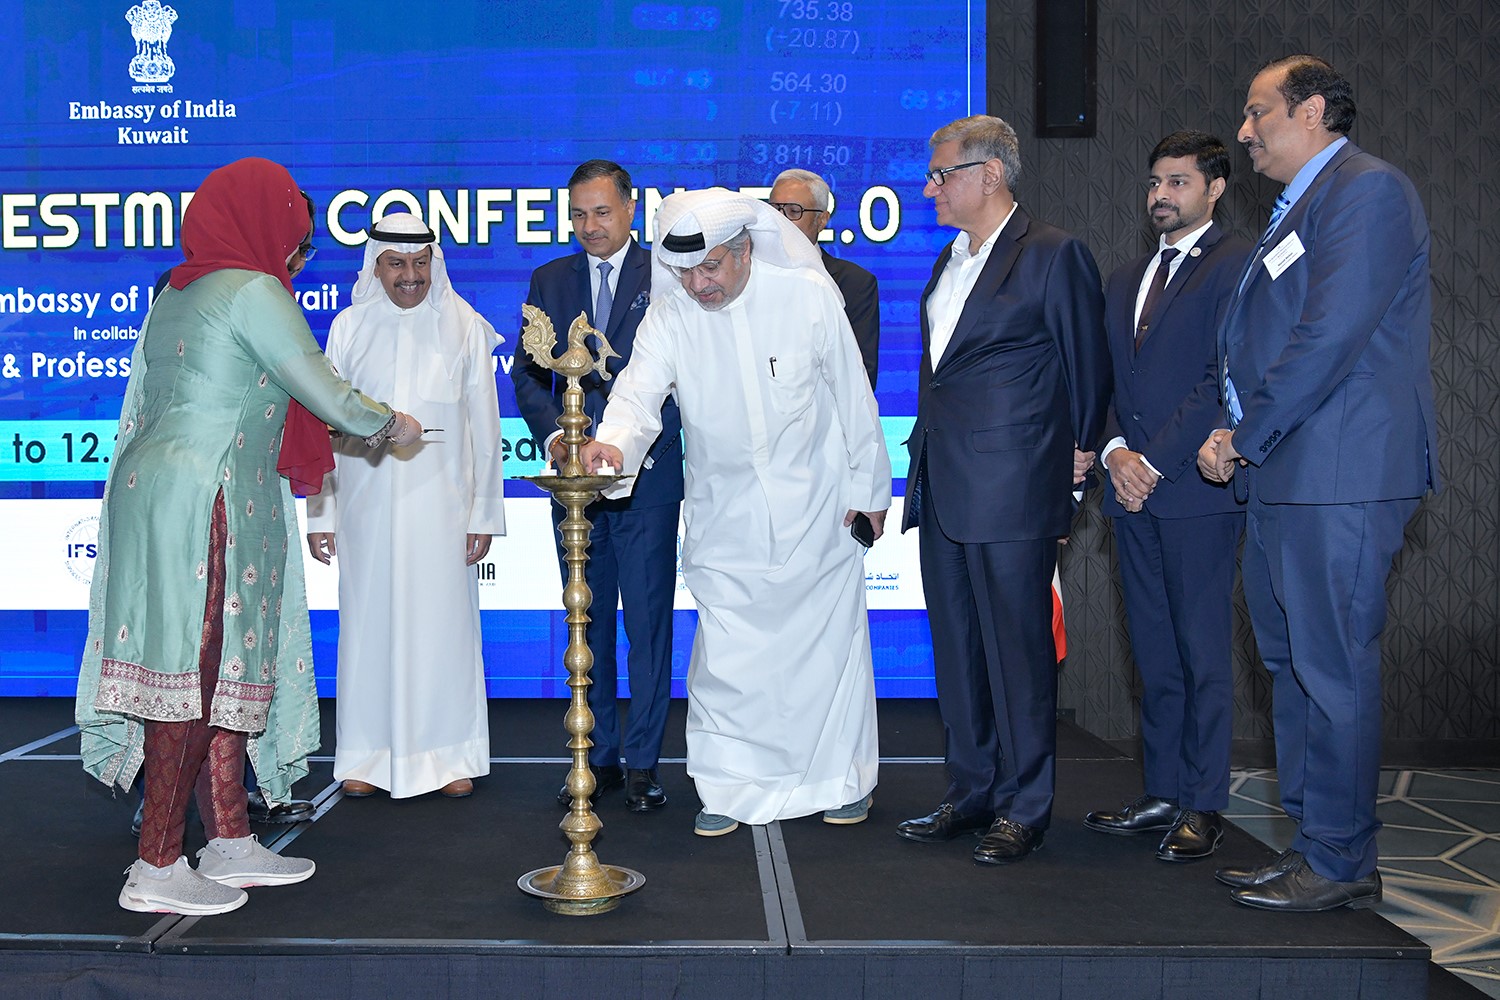 إشعال الشمع إيذانا ببدء مؤتمر الاستثمار الهندي - الكويتي الثاني